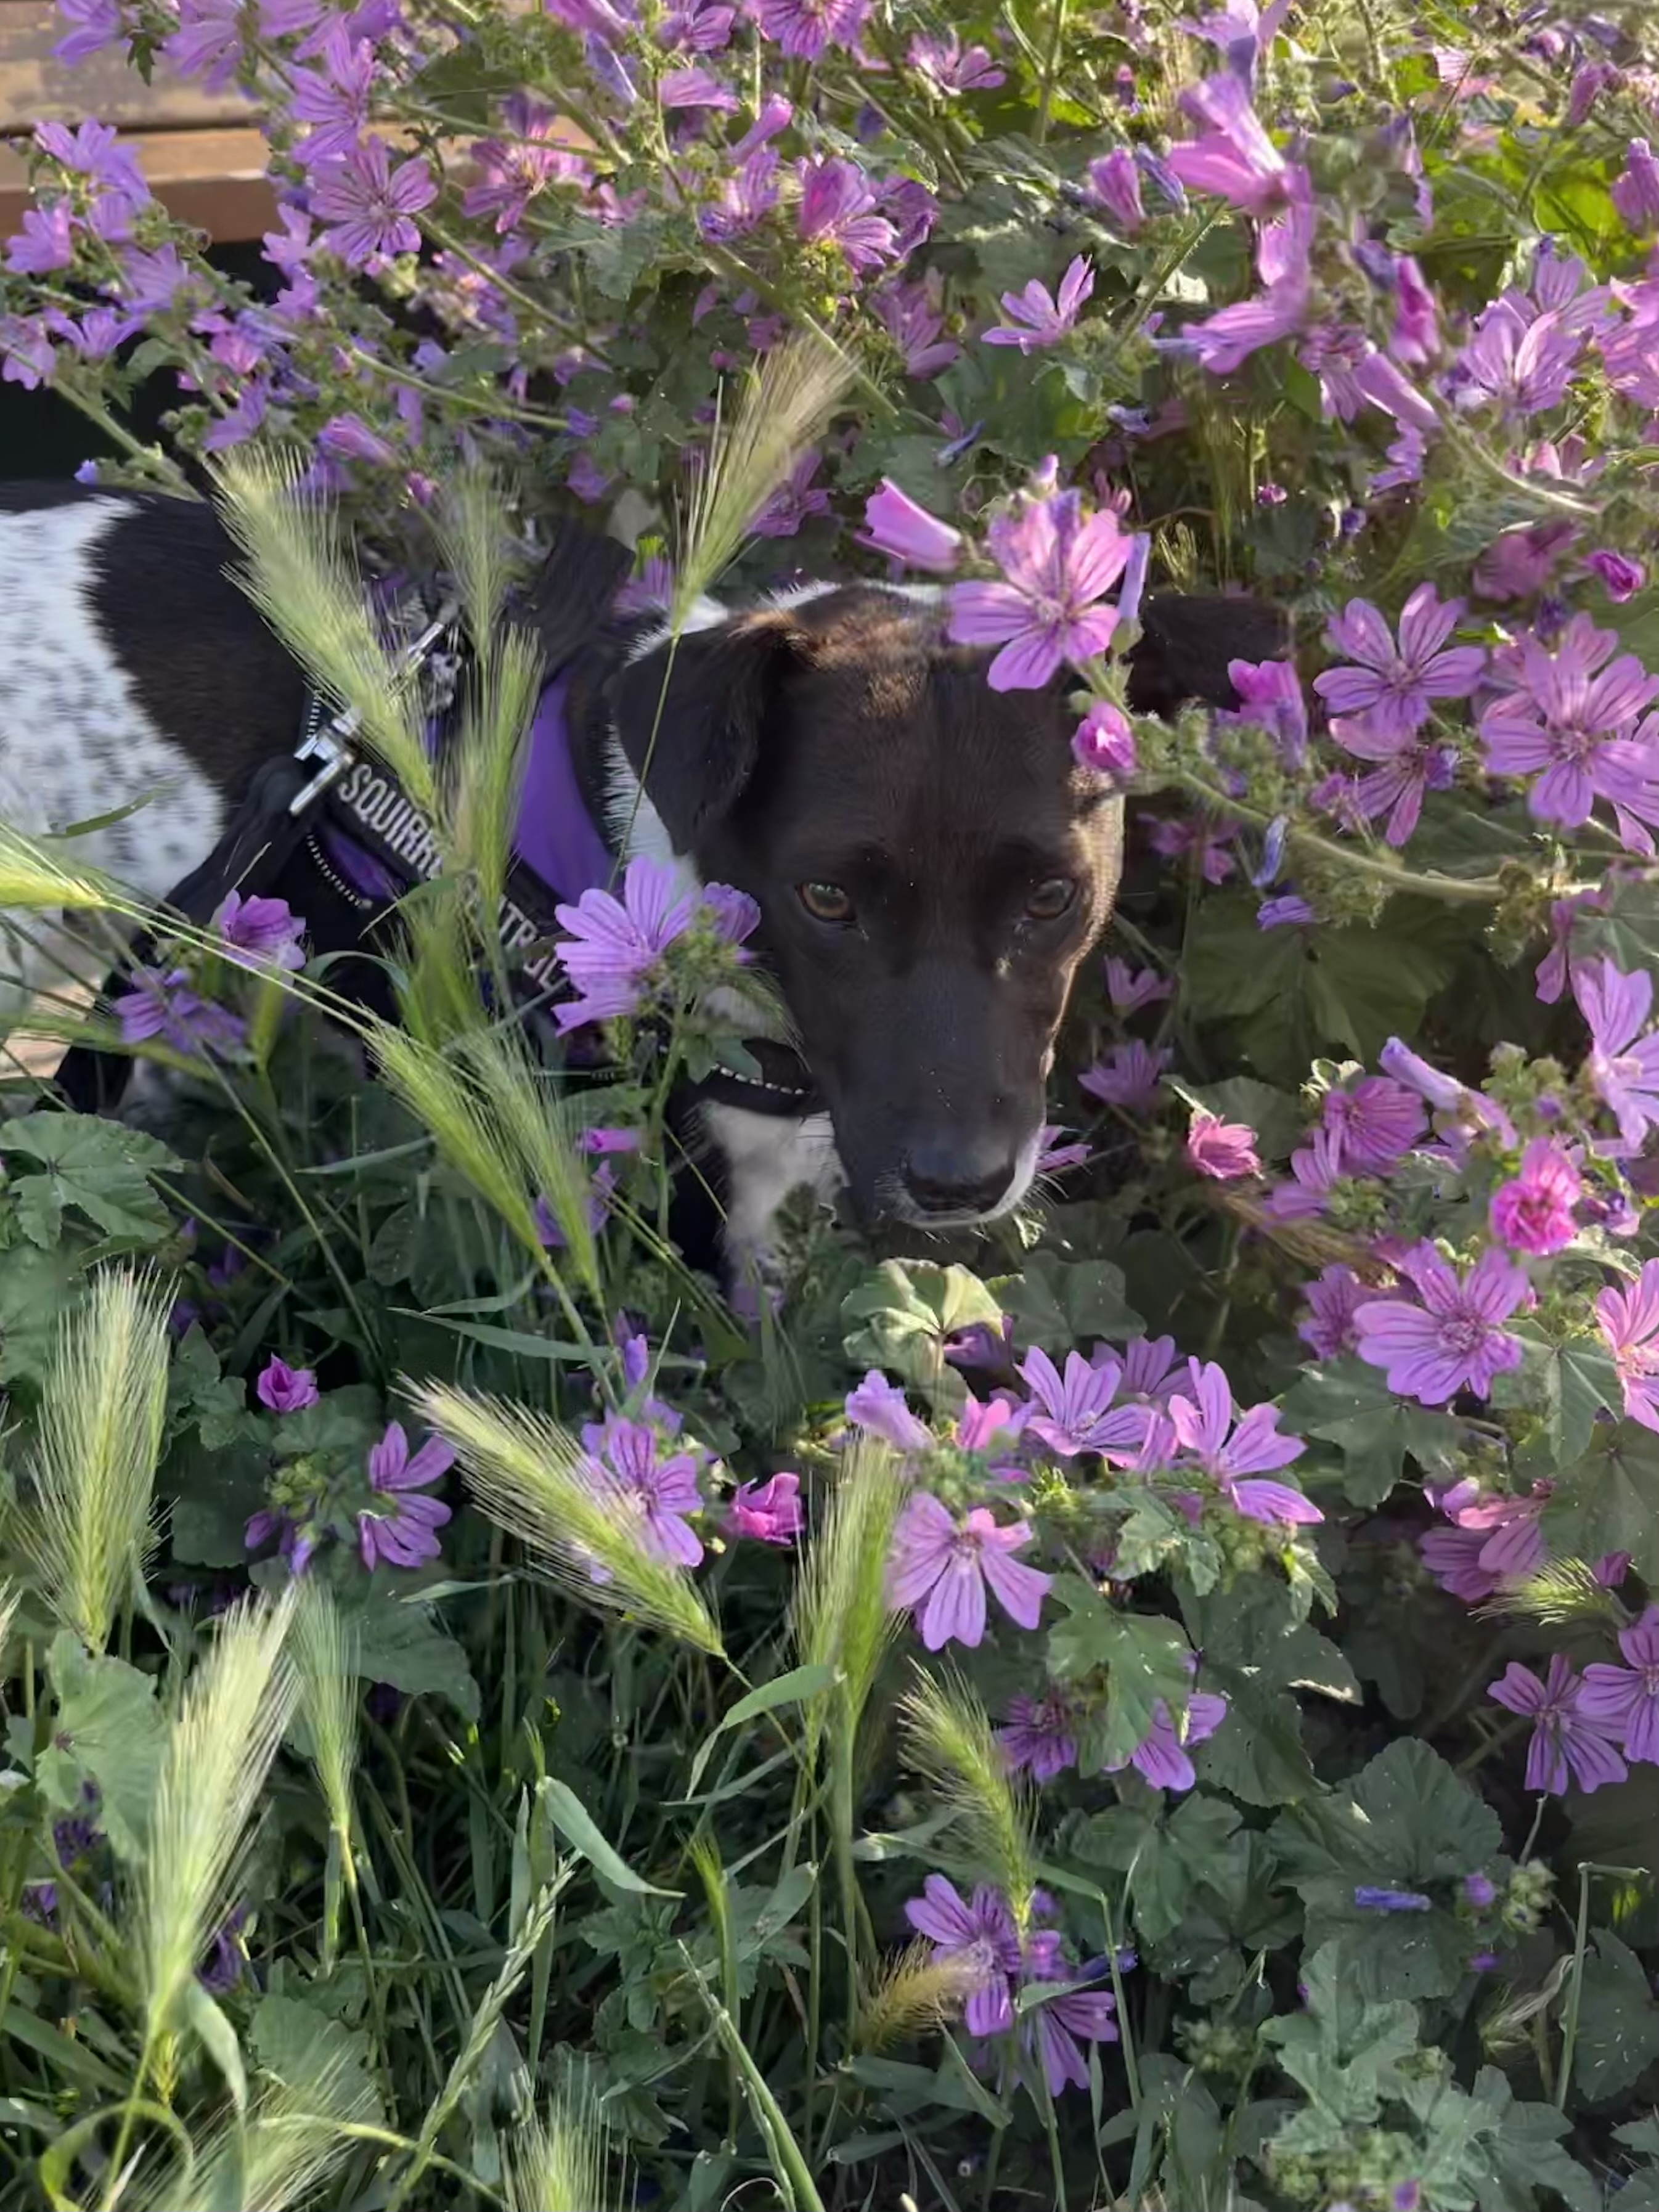 Purple pup